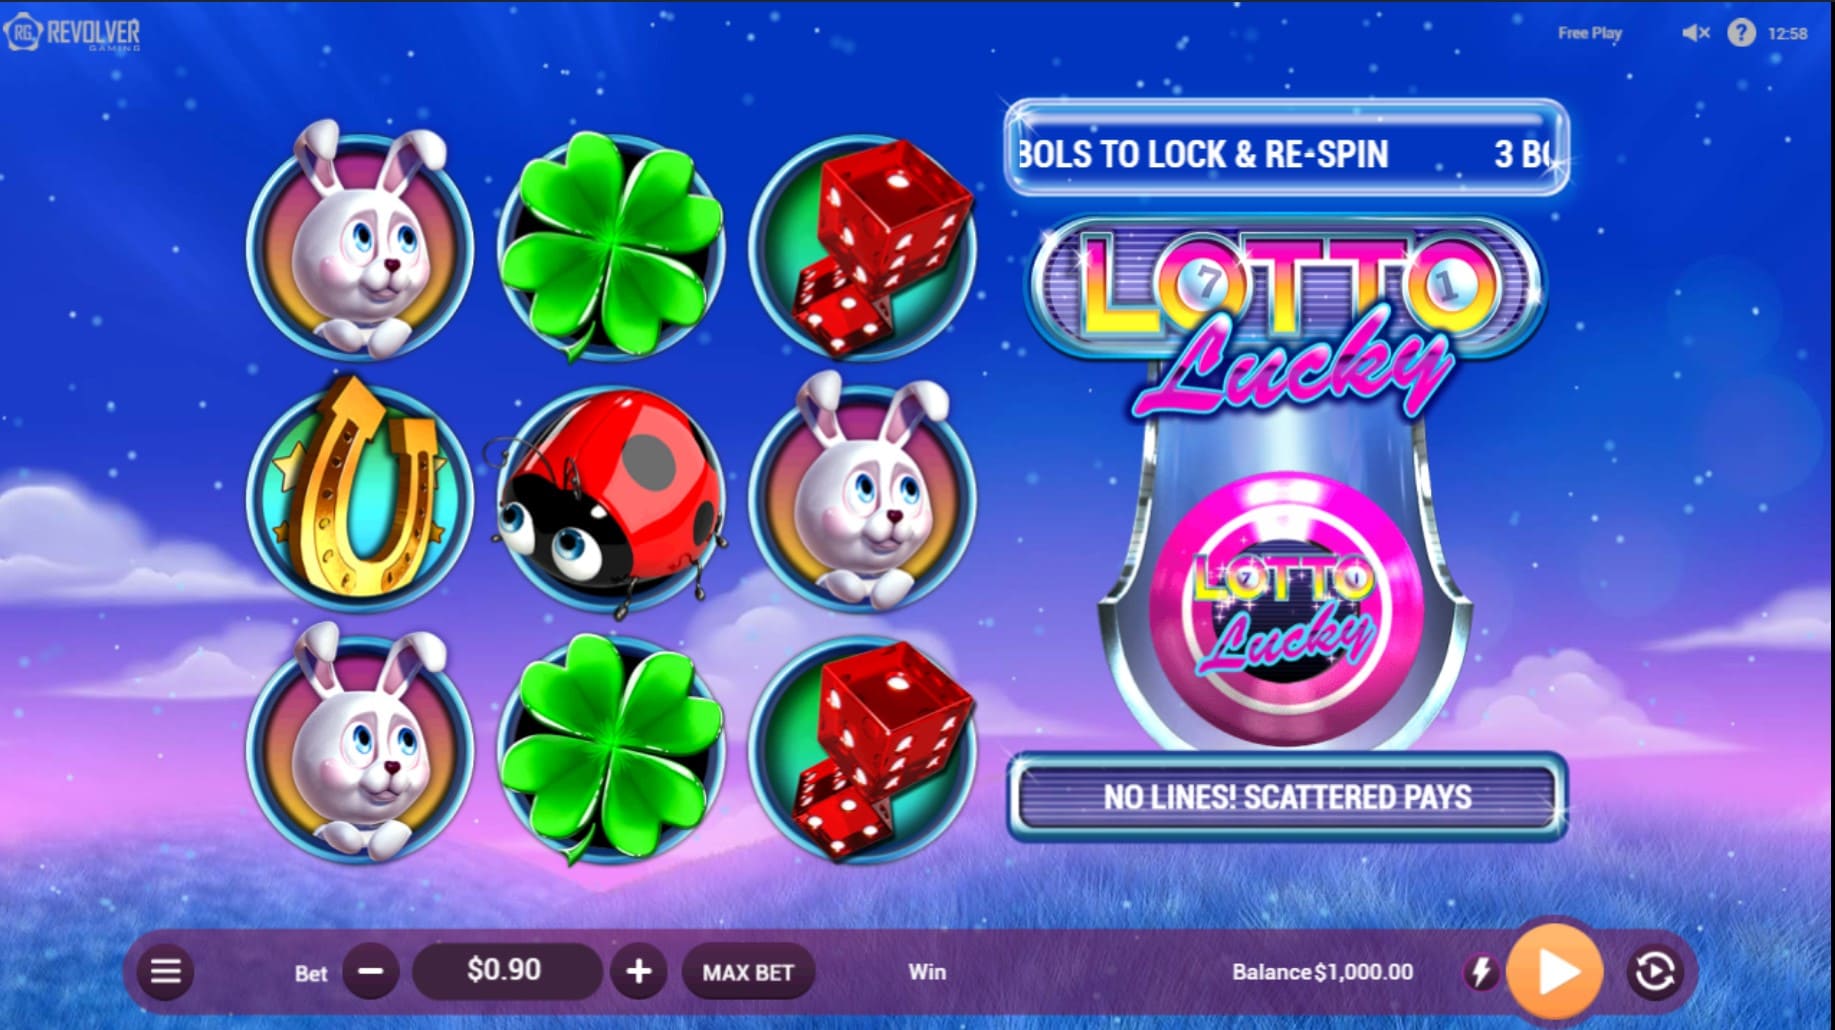 Lotto Lucky slot